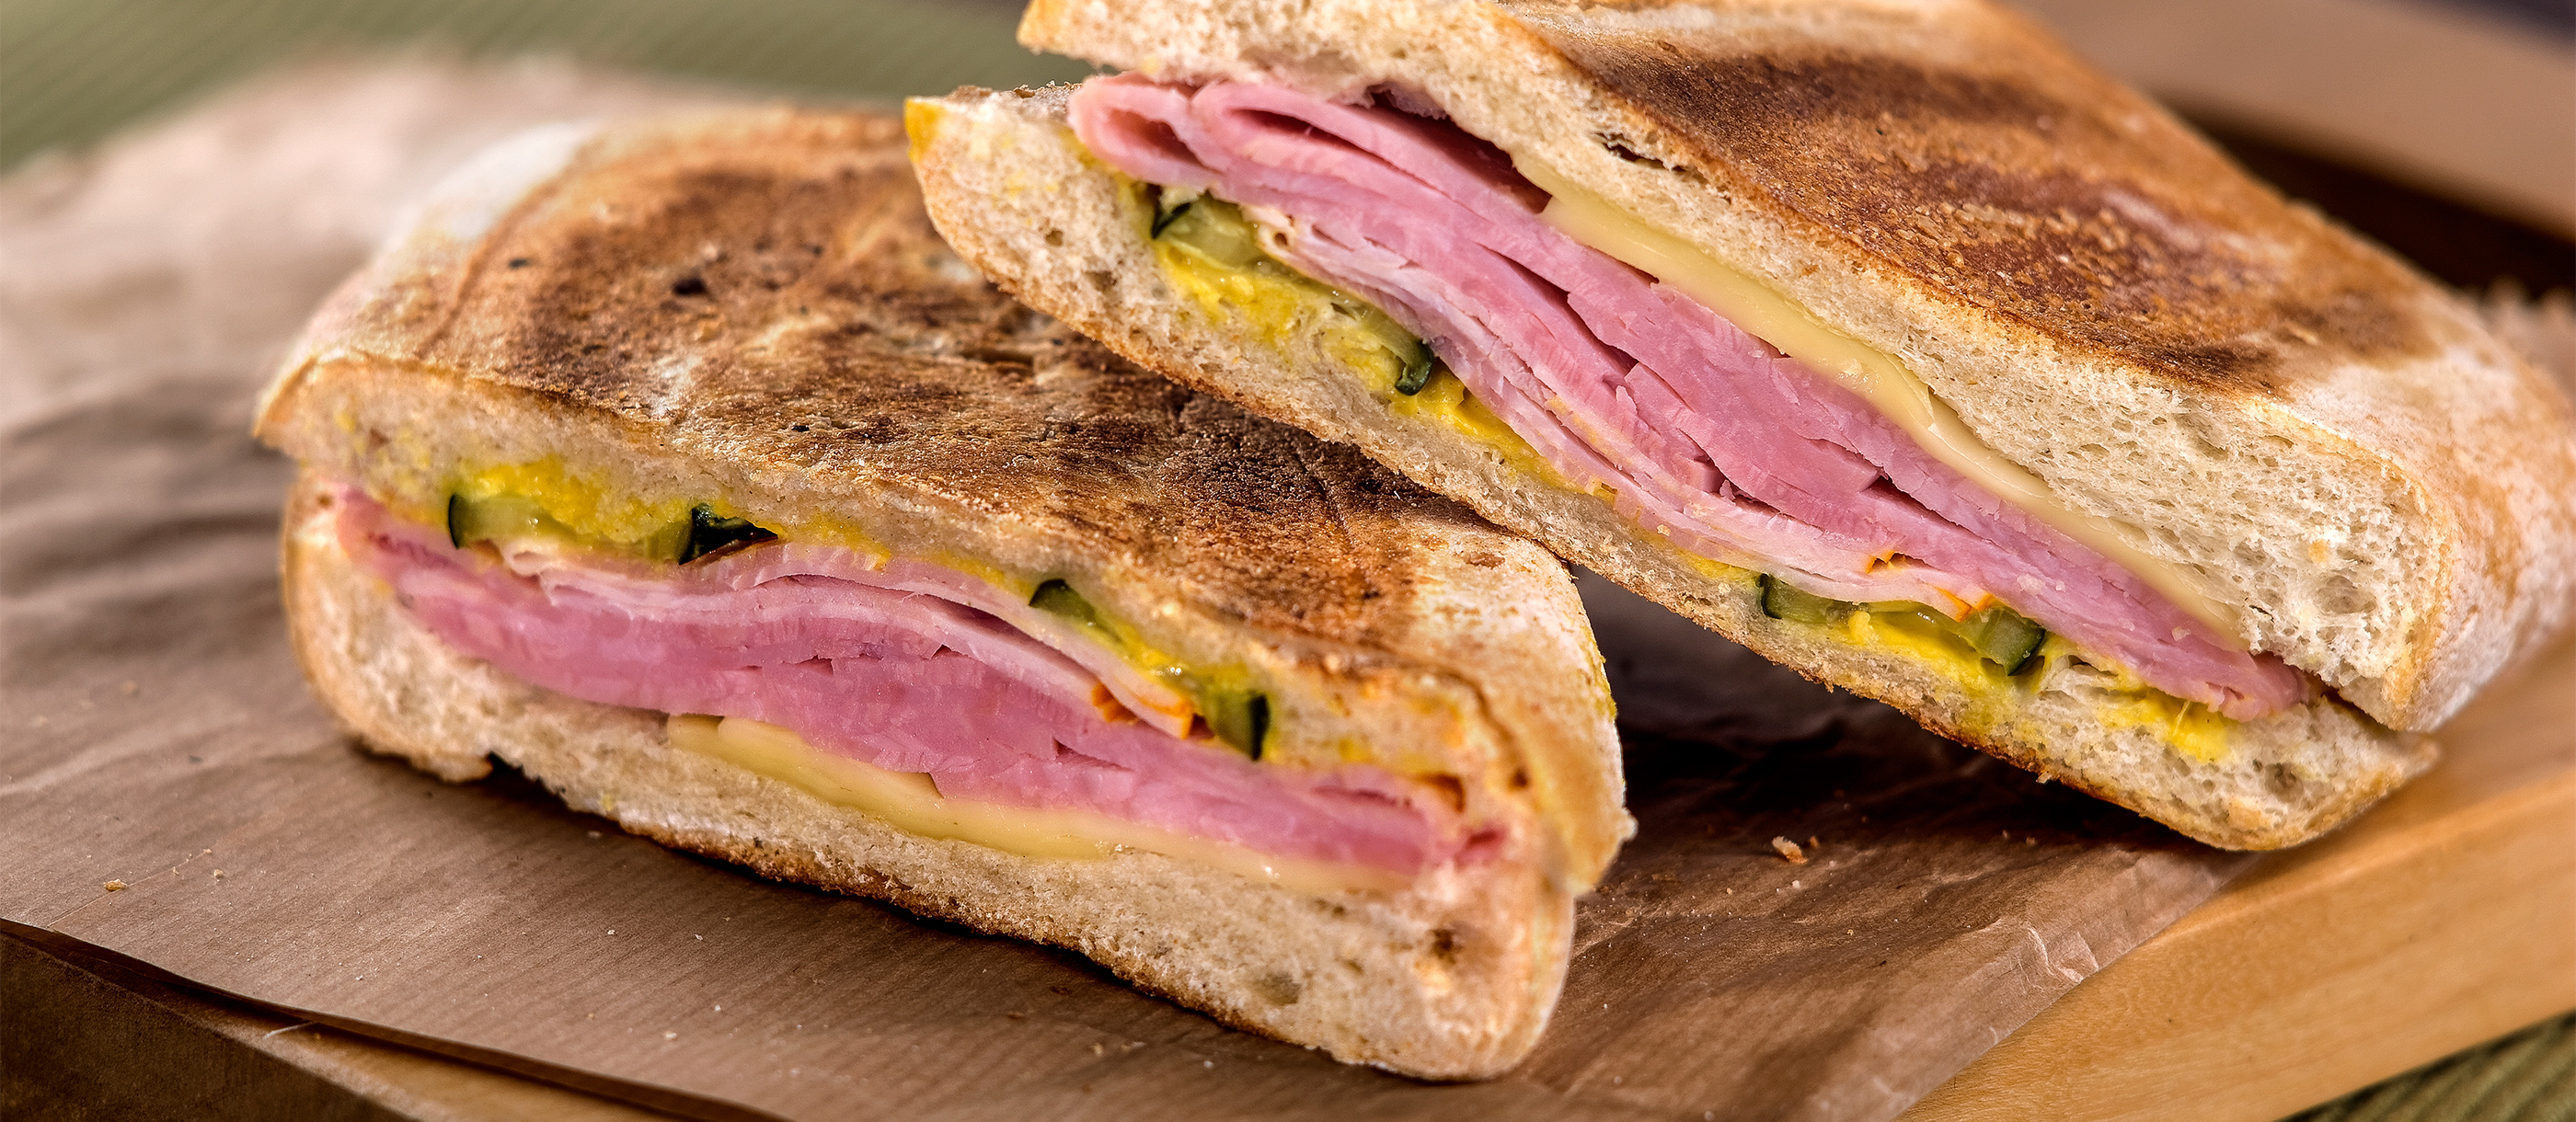 Where to Eat the Best Cuban Sandwich in the World? | TasteAtlas